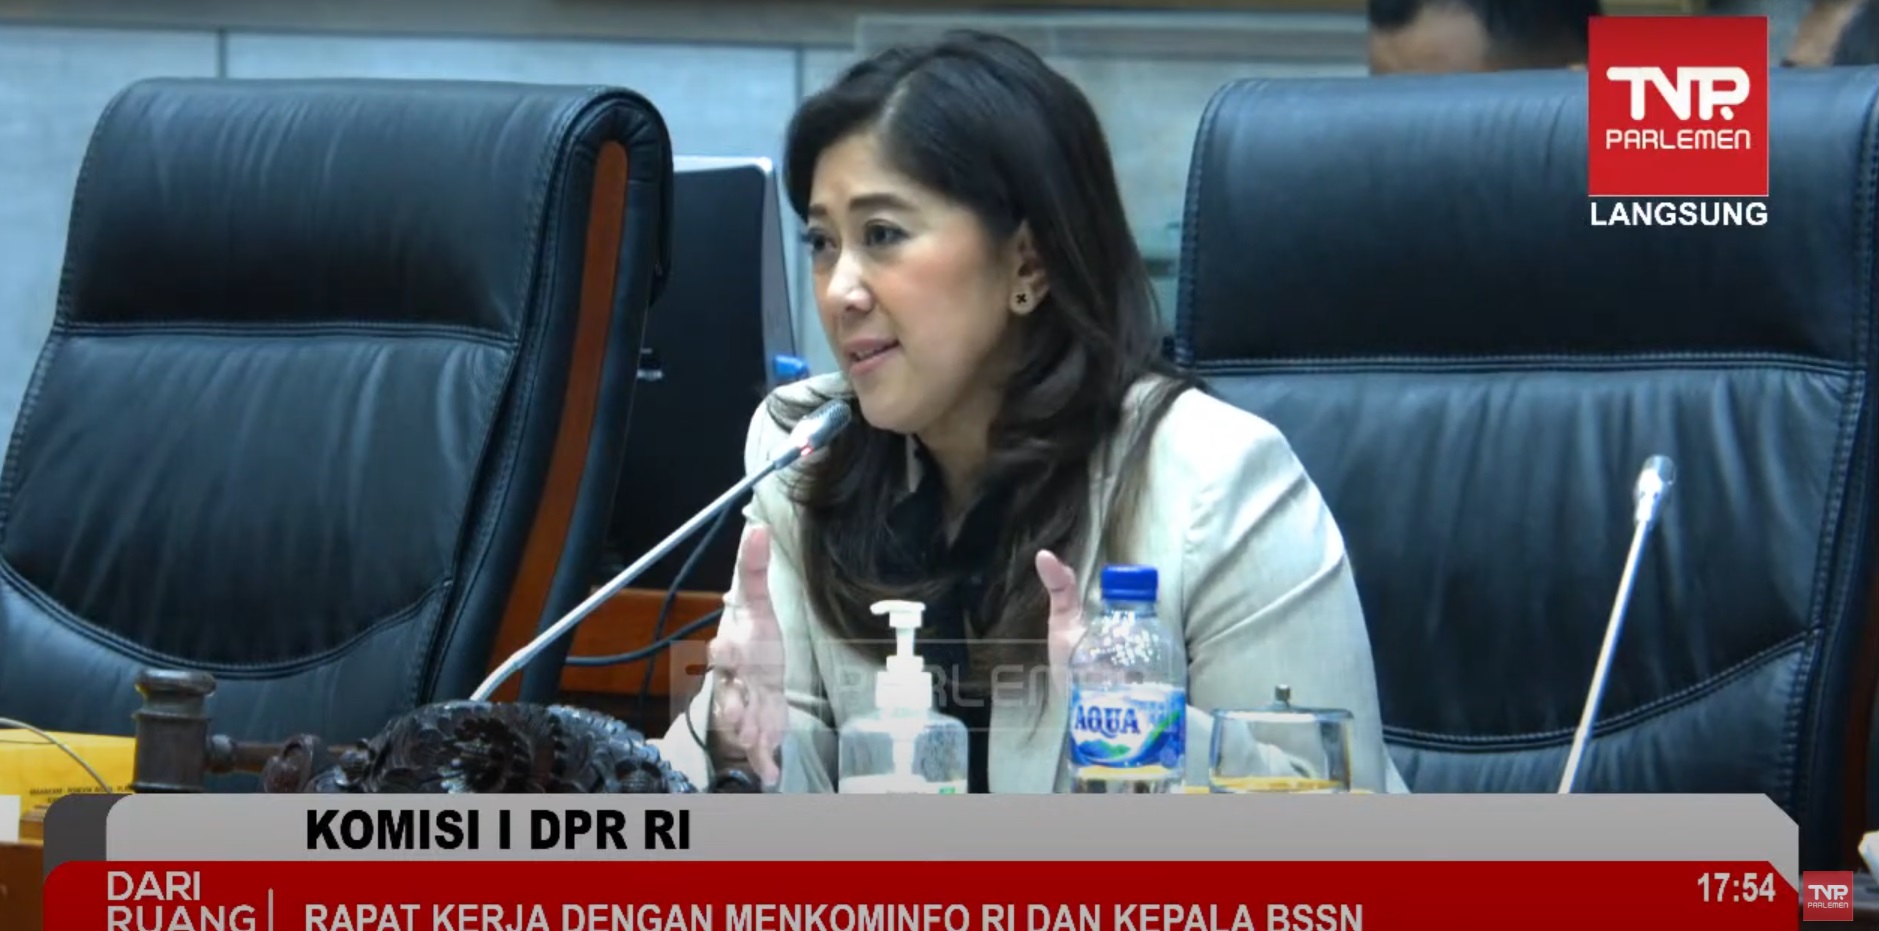 Komisi I DPR RI Dorong Pembentukan Satgas dan Crisis Center Pemulihan PDNS: Kominfo dan BSSN Terlalu Lamban